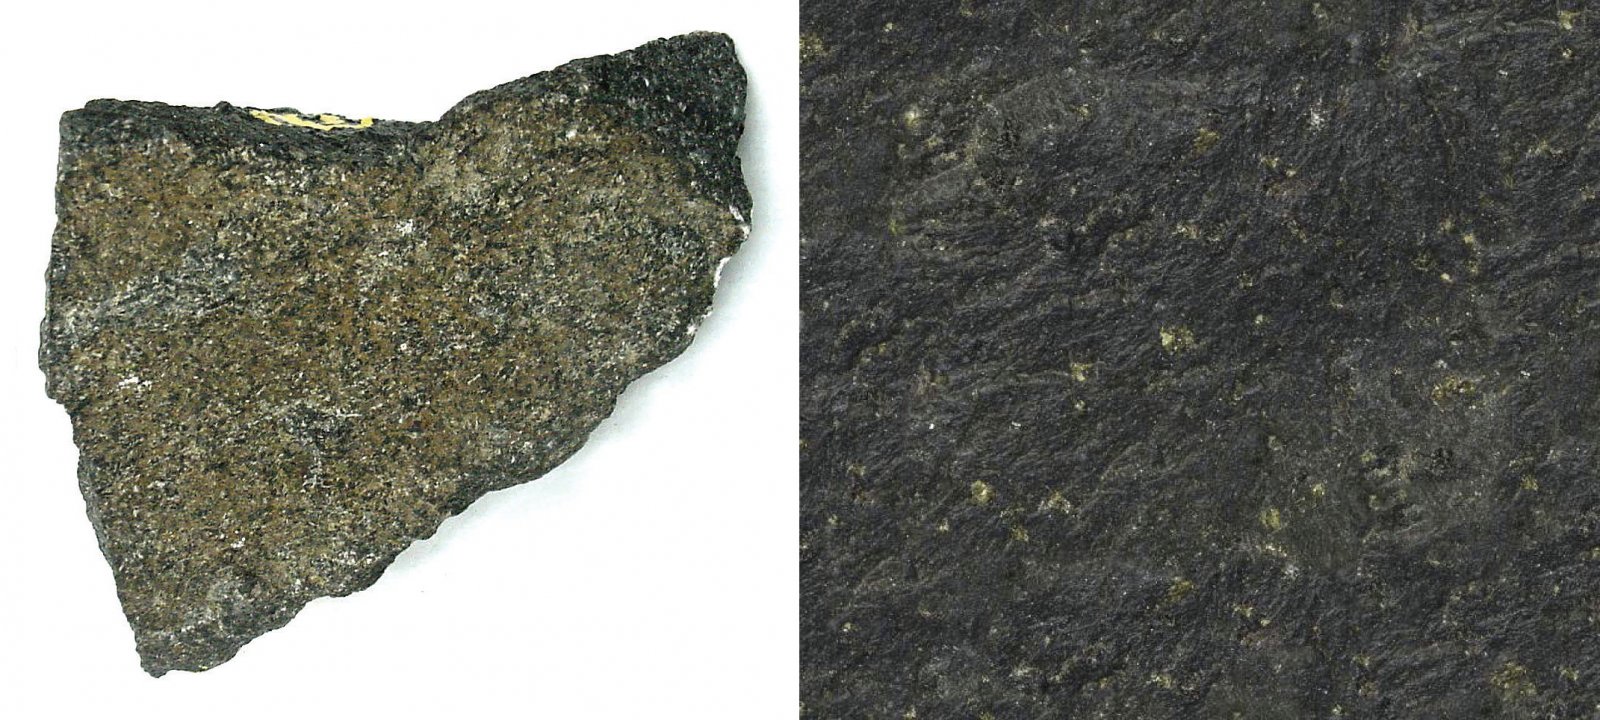 7 pav. a) bazaltas, b) bazalto tekstūra / Fig. 7. a) basalt, b) texture of basalt